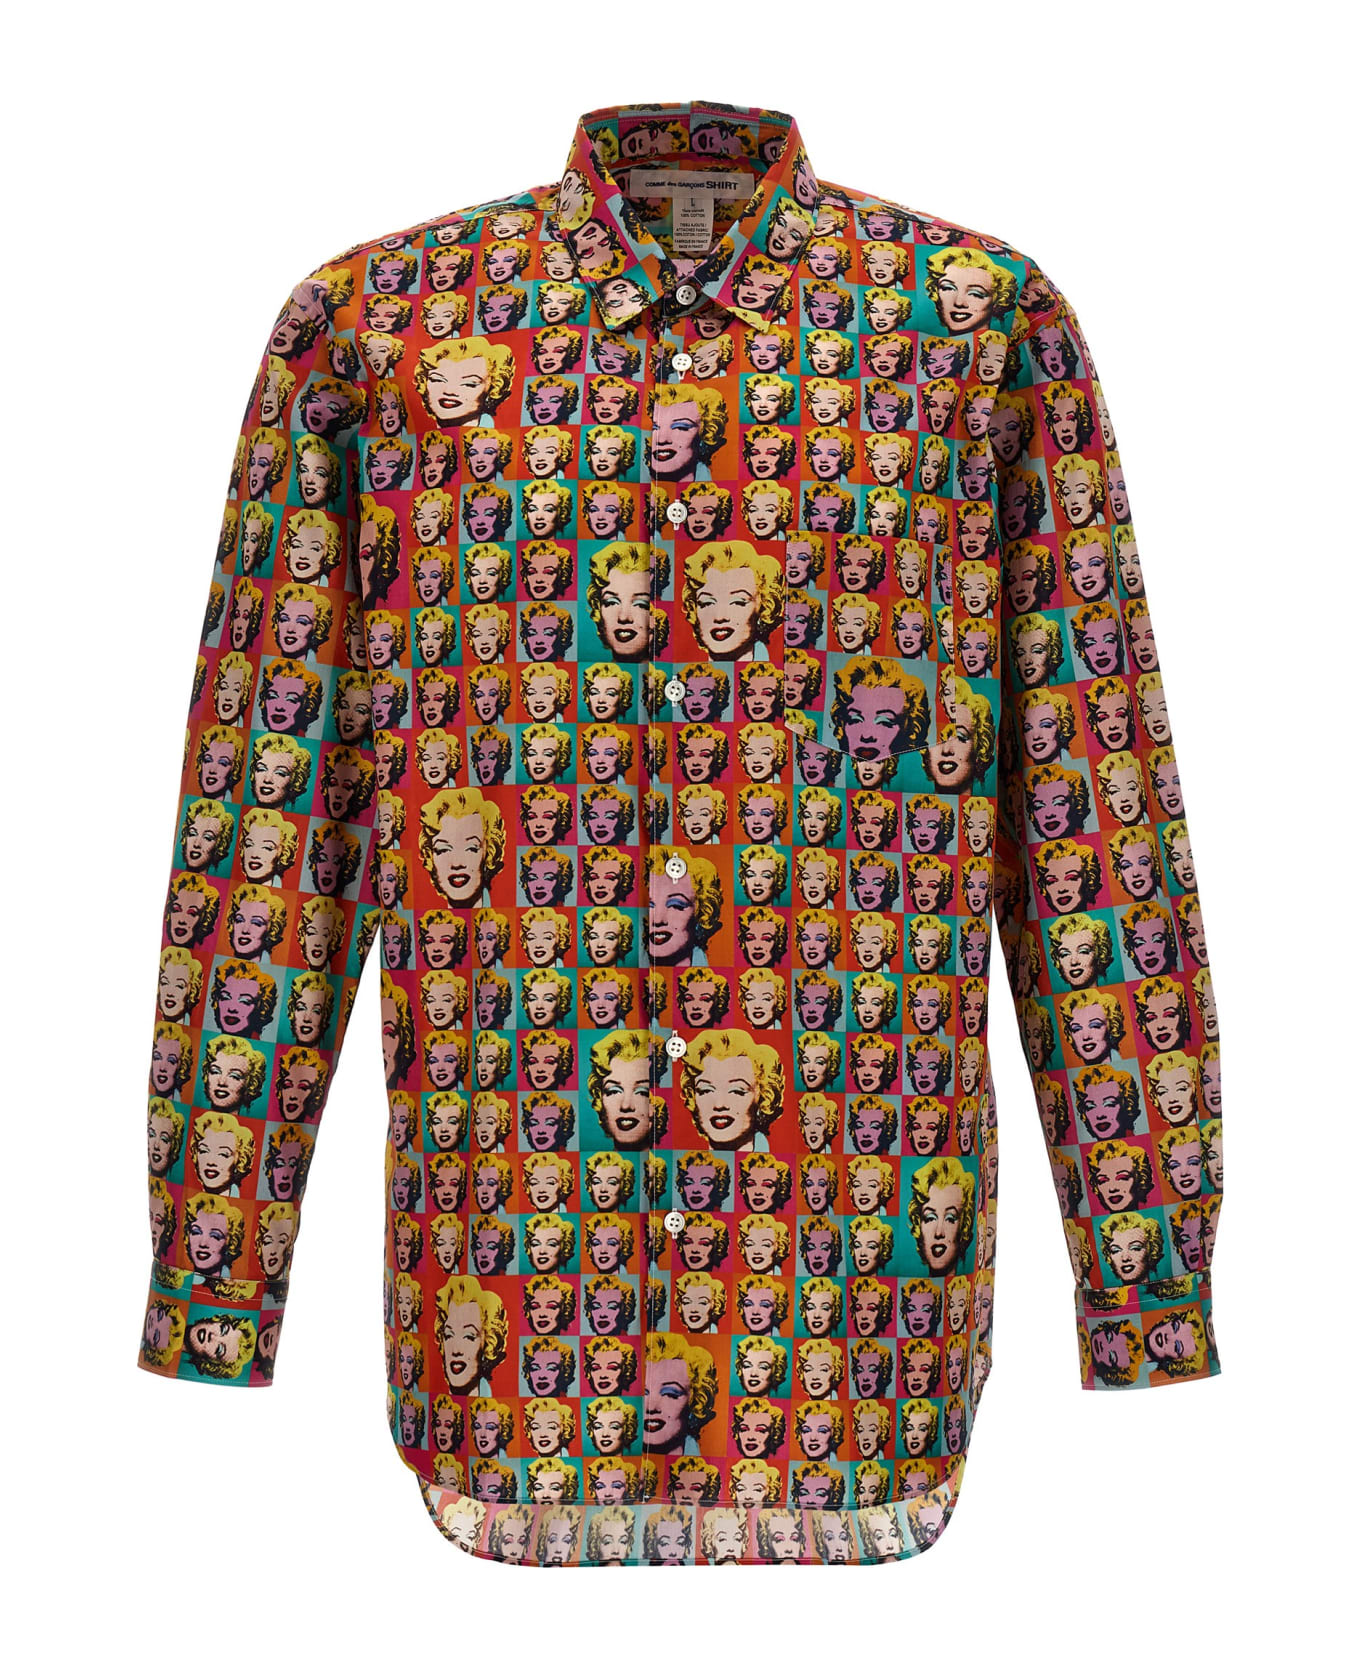 Comme des Garçons Shirt 'andy Warhol' Shirt - Print シャツ